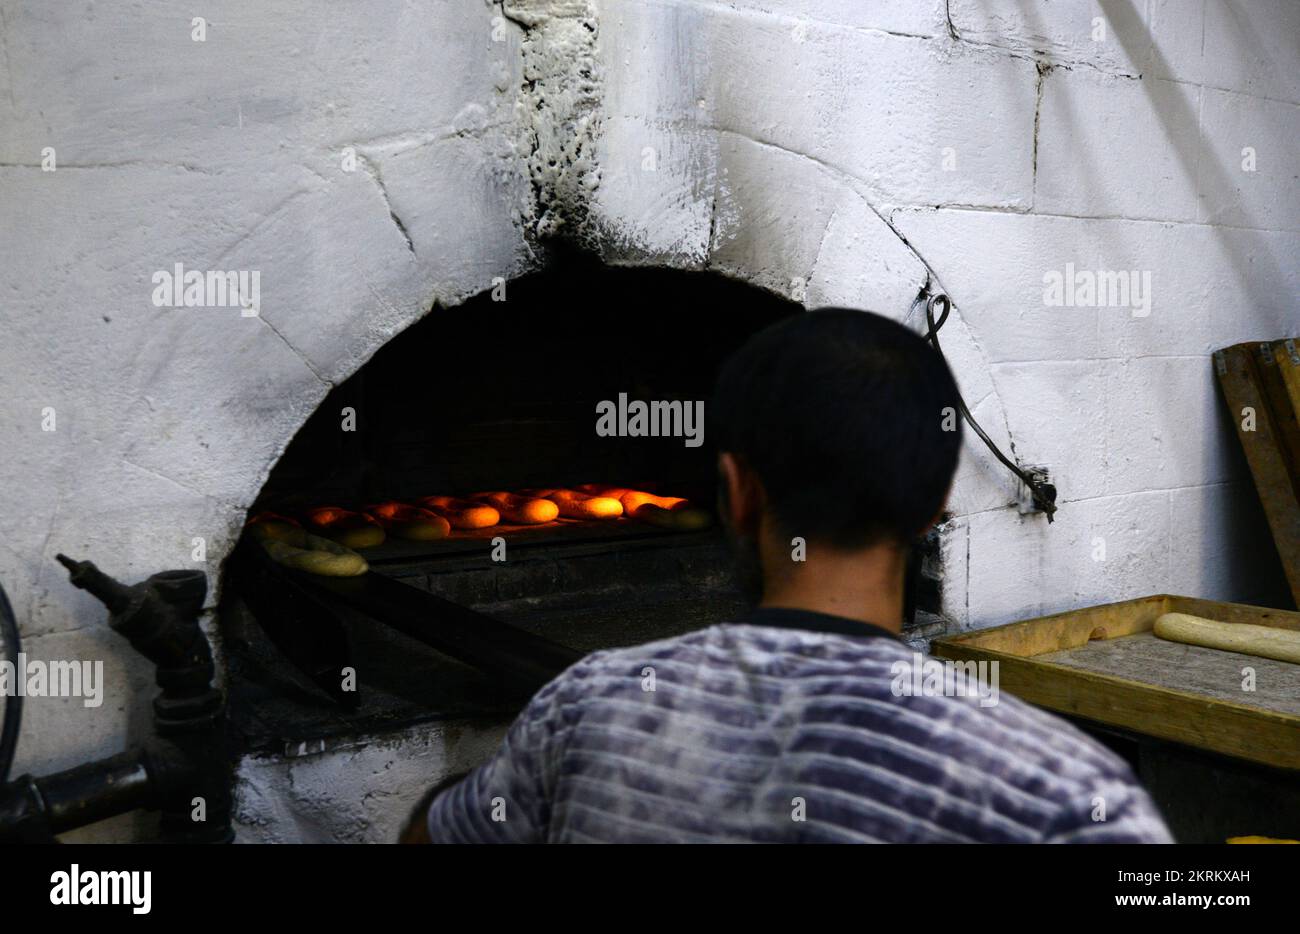 Eine traditionelle Feuerofenbäckerei, spezialisiert auf Ka'ek Al-Quds - Sesambagelbrot. Christliches Viertel, Altstadt von Jerusalem. Stockfoto